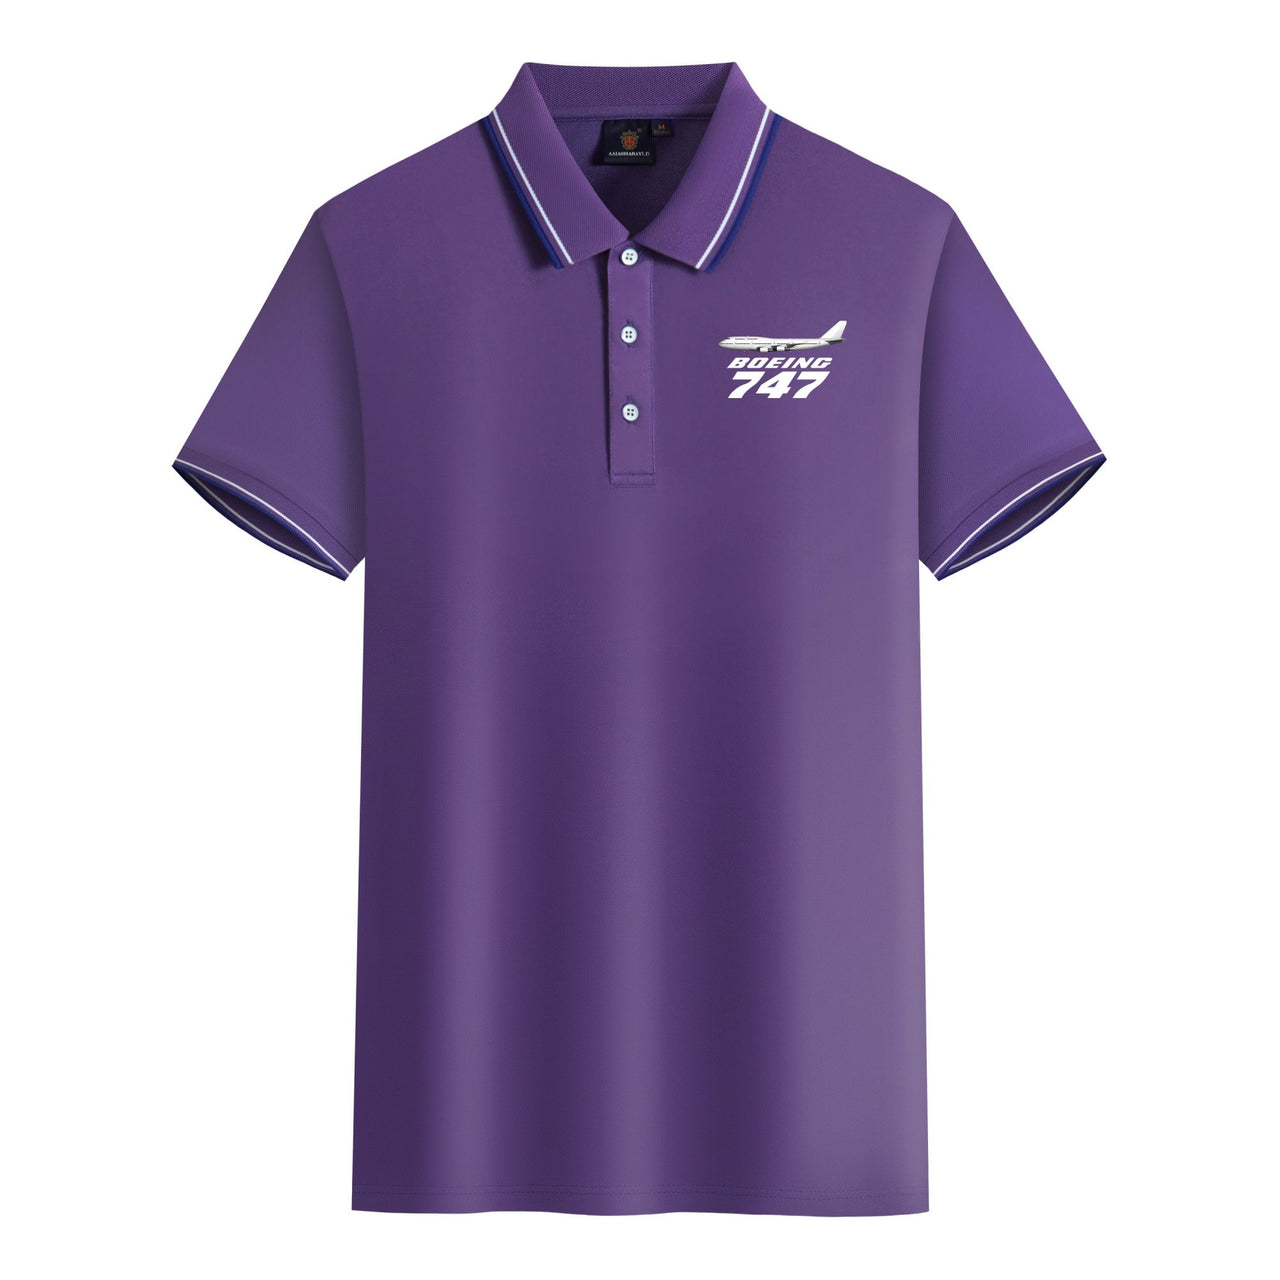 The Boeing 747 Designed Stylish Polo T-Shirts